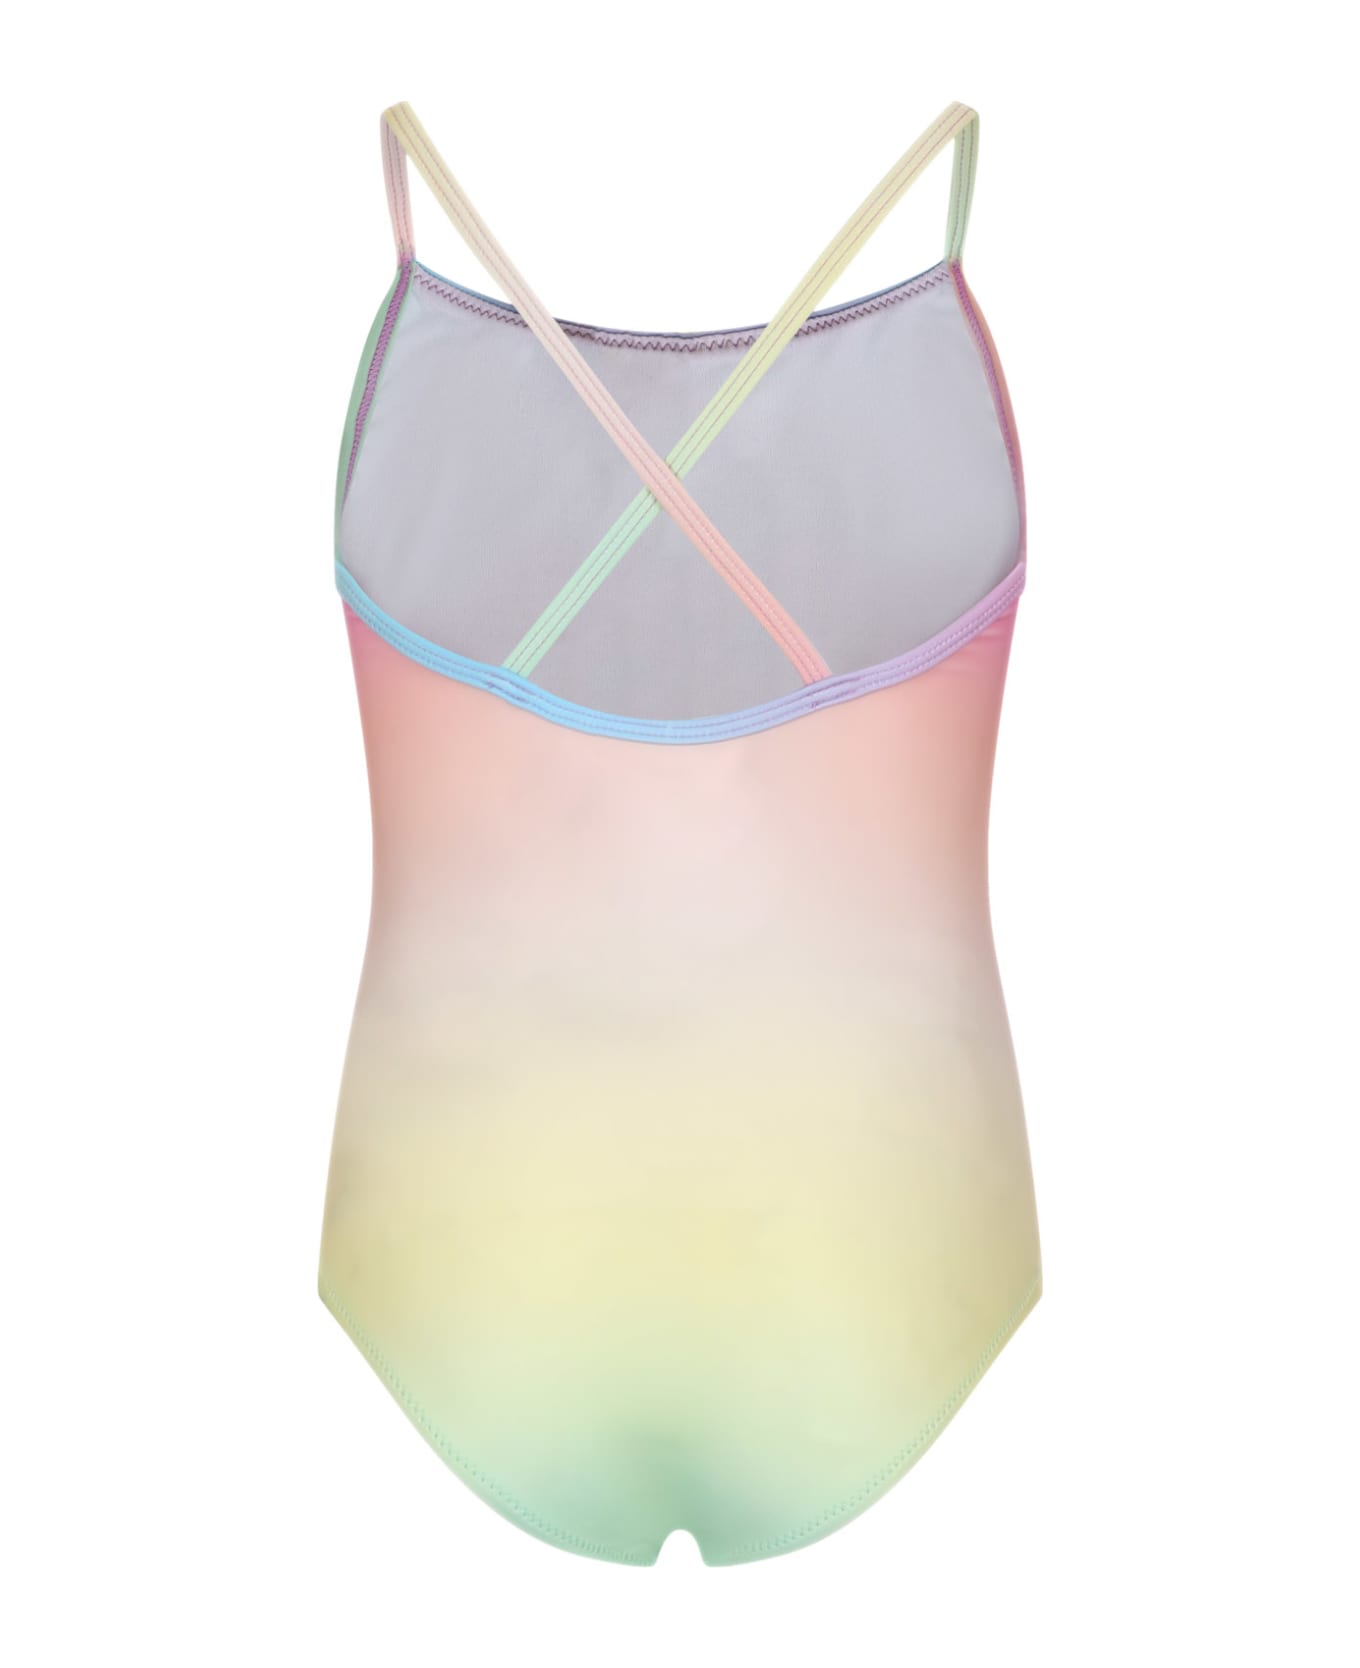 Molo Multicolor Swimsuit For Girl With Print - Multicolor 水着